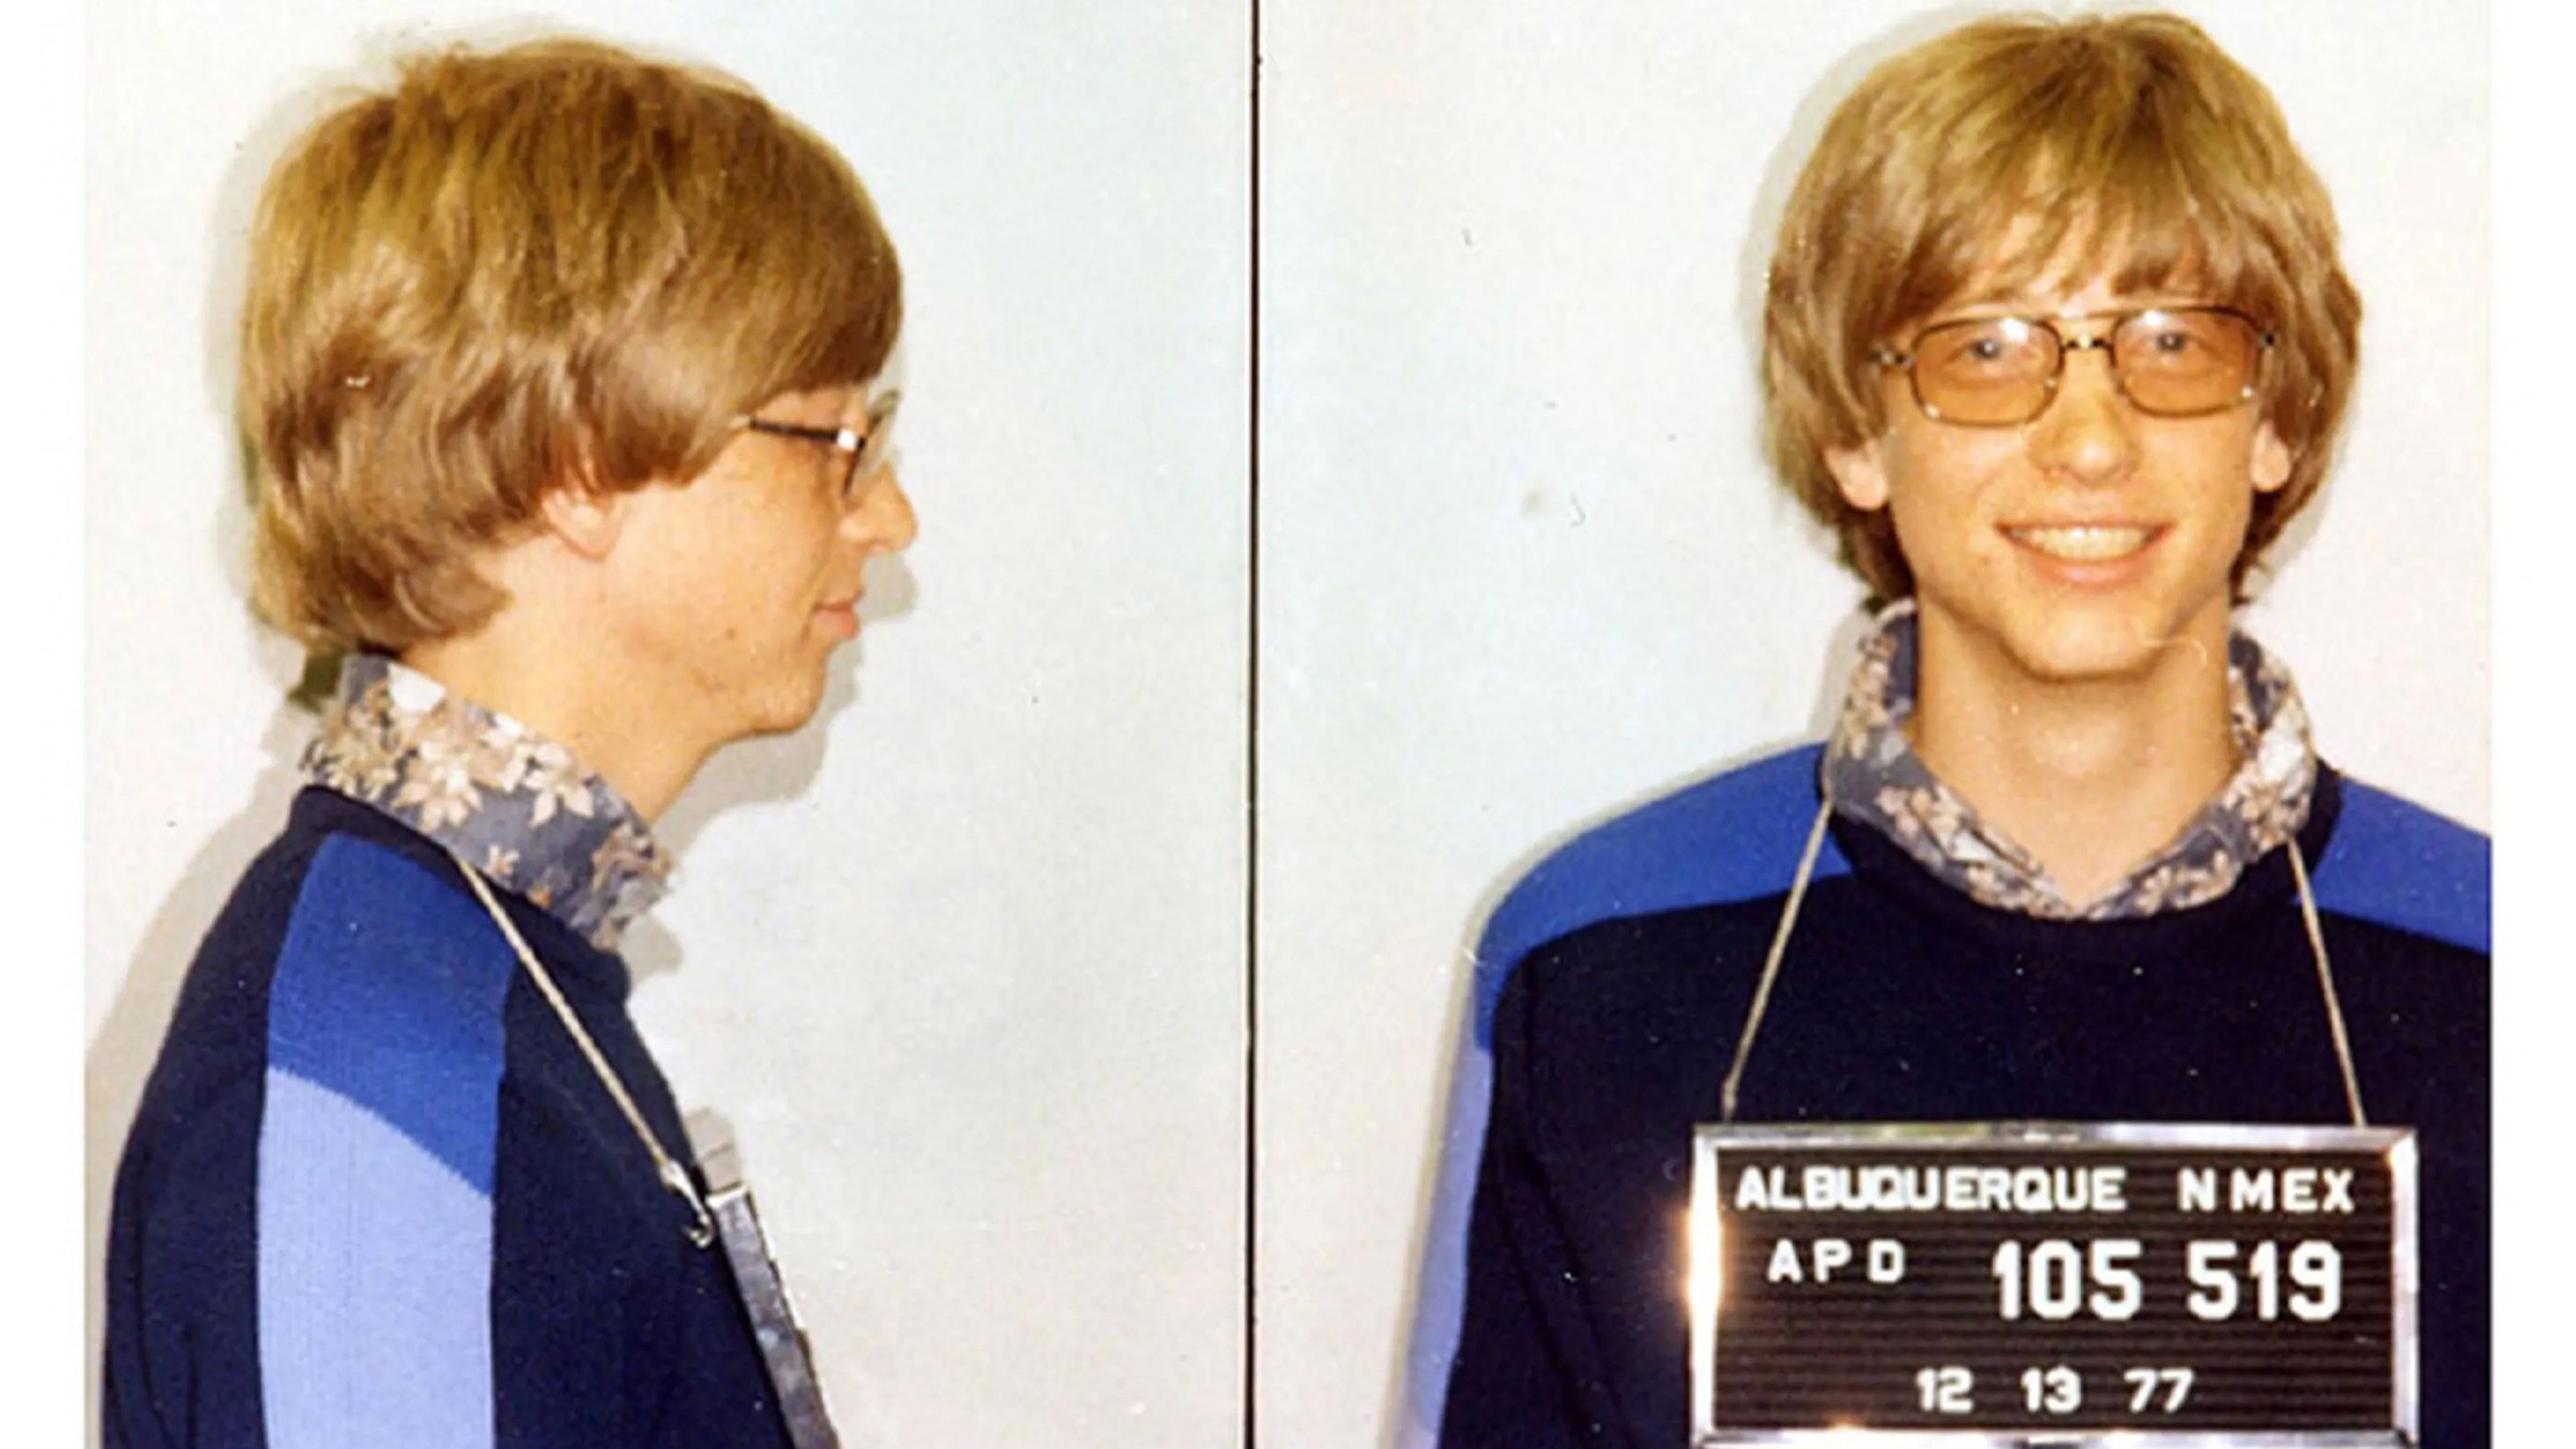 Fotos de la ficha policial del joven Bill Gates